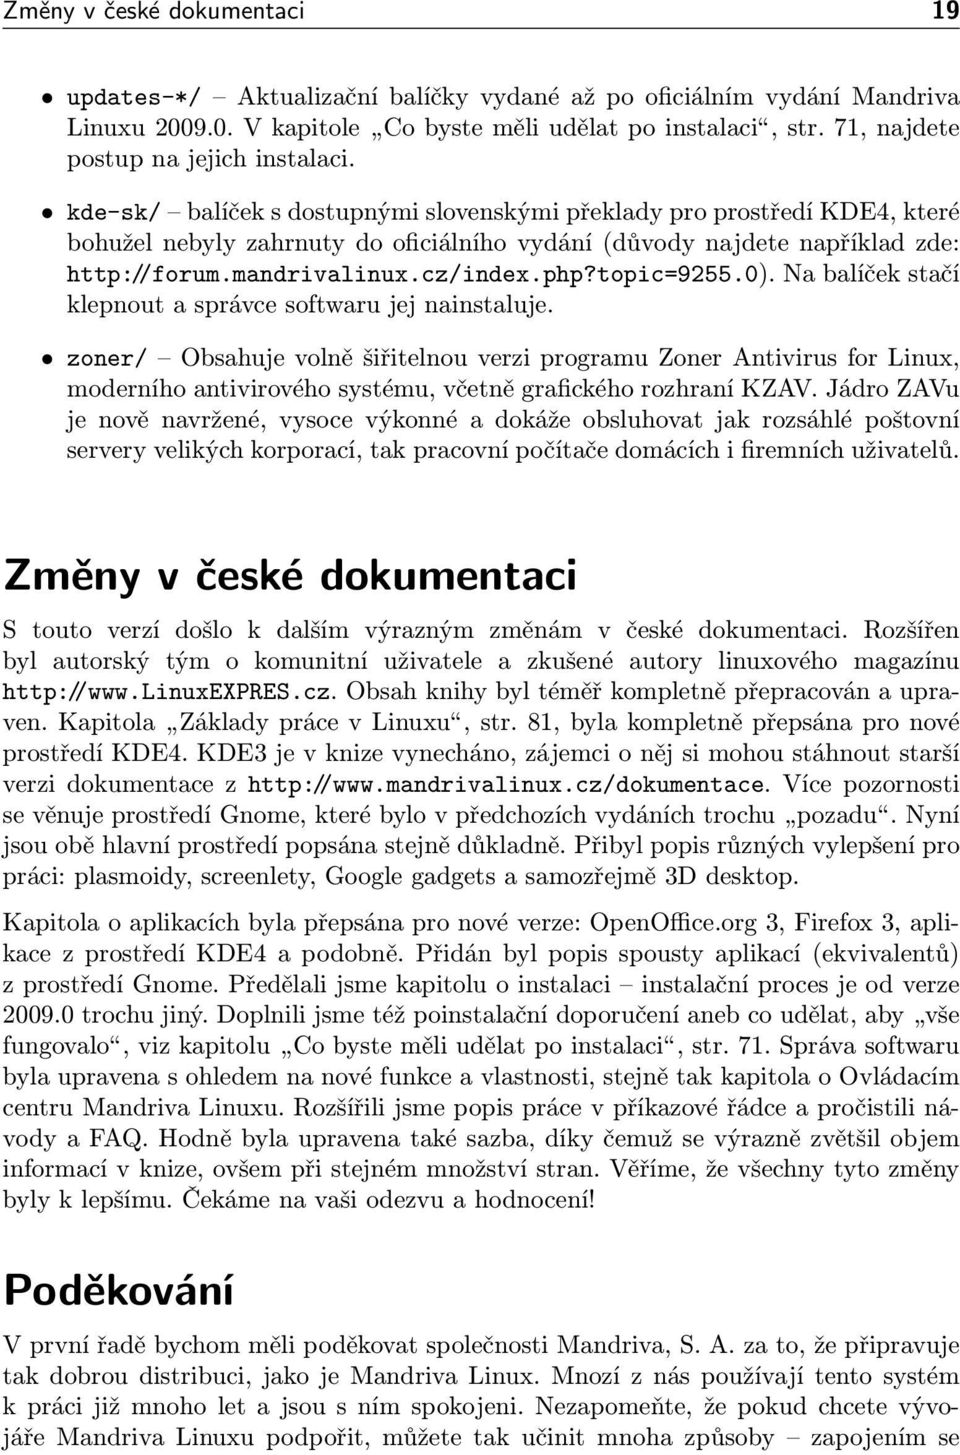 kde-sk/ balíček s dostupnými slovenskými překlady pro prostředí KDE4, které bohužel nebyly zahrnuty do oficiálního vydání (důvody najdete například zde: http://forum.mandrivalinux.cz/index.php?